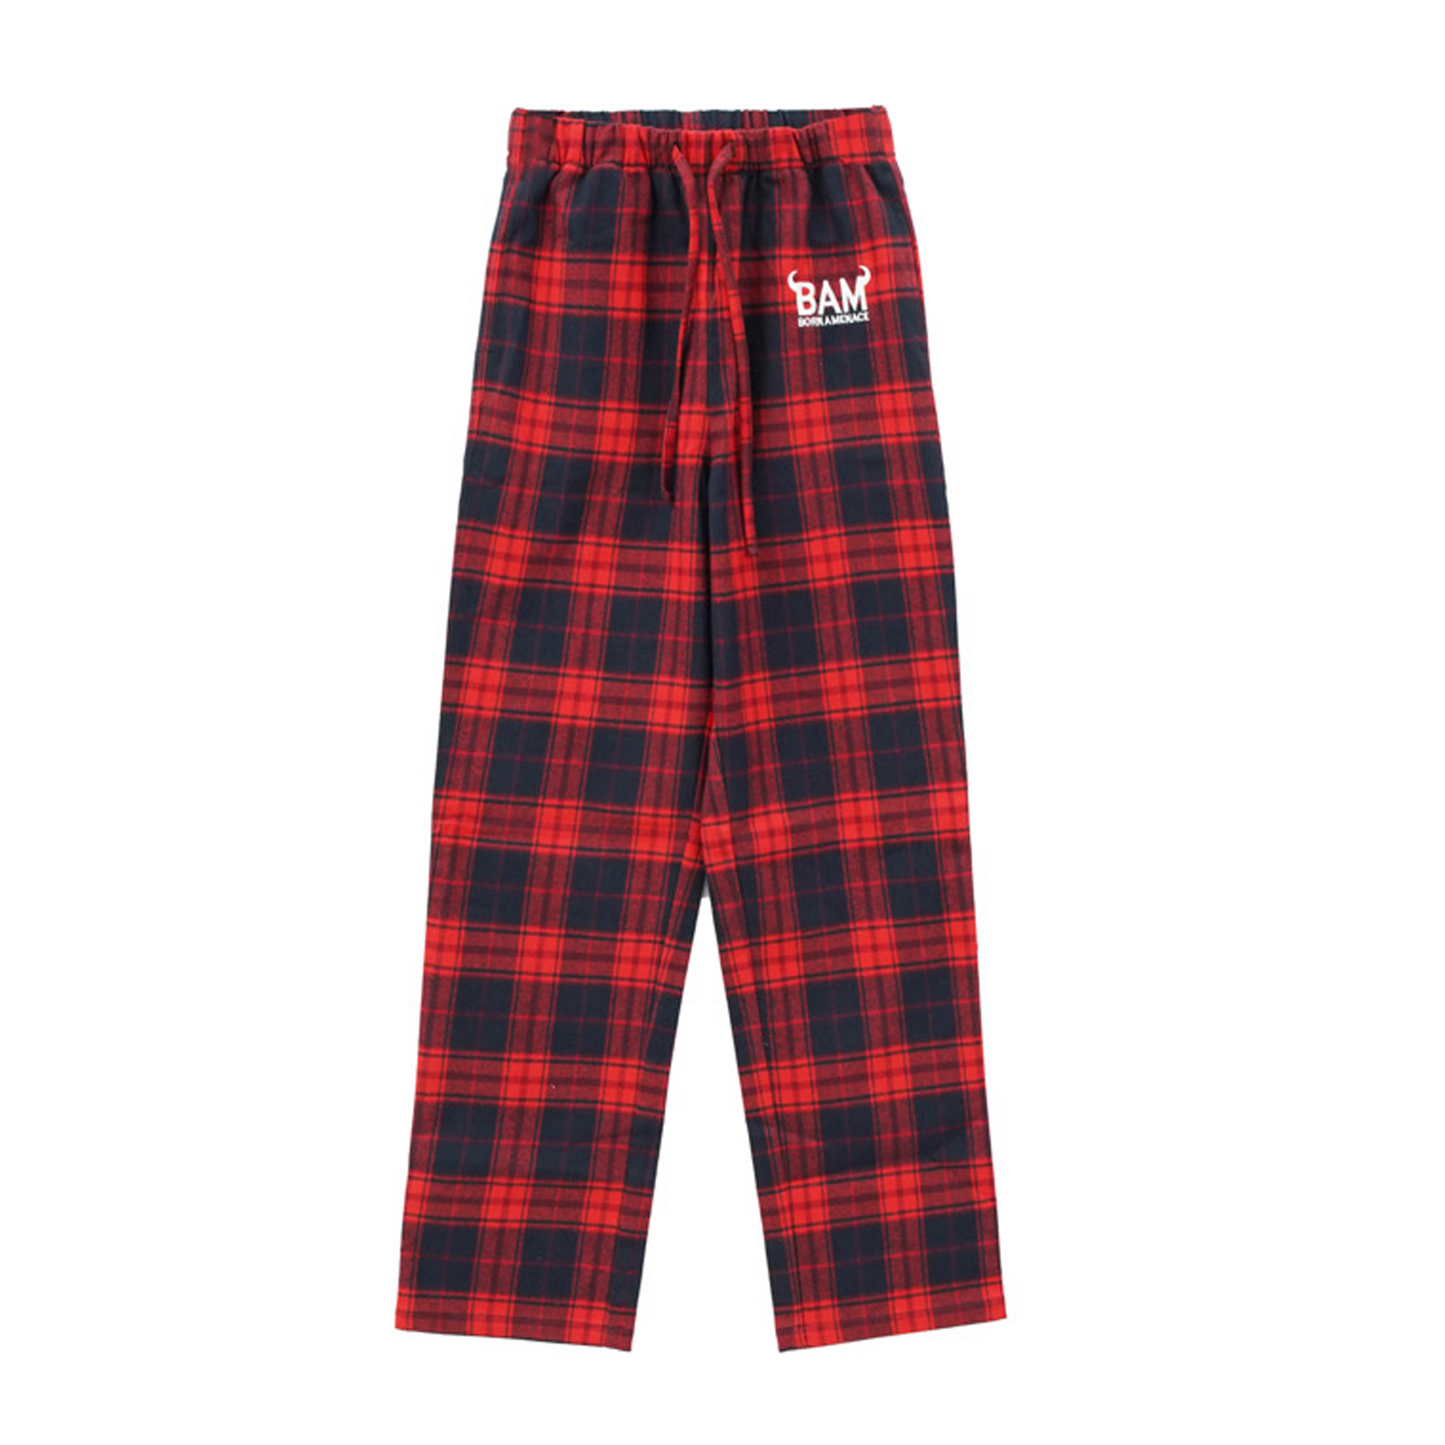 BAM Red/Black Pajamas – kaneljoseph